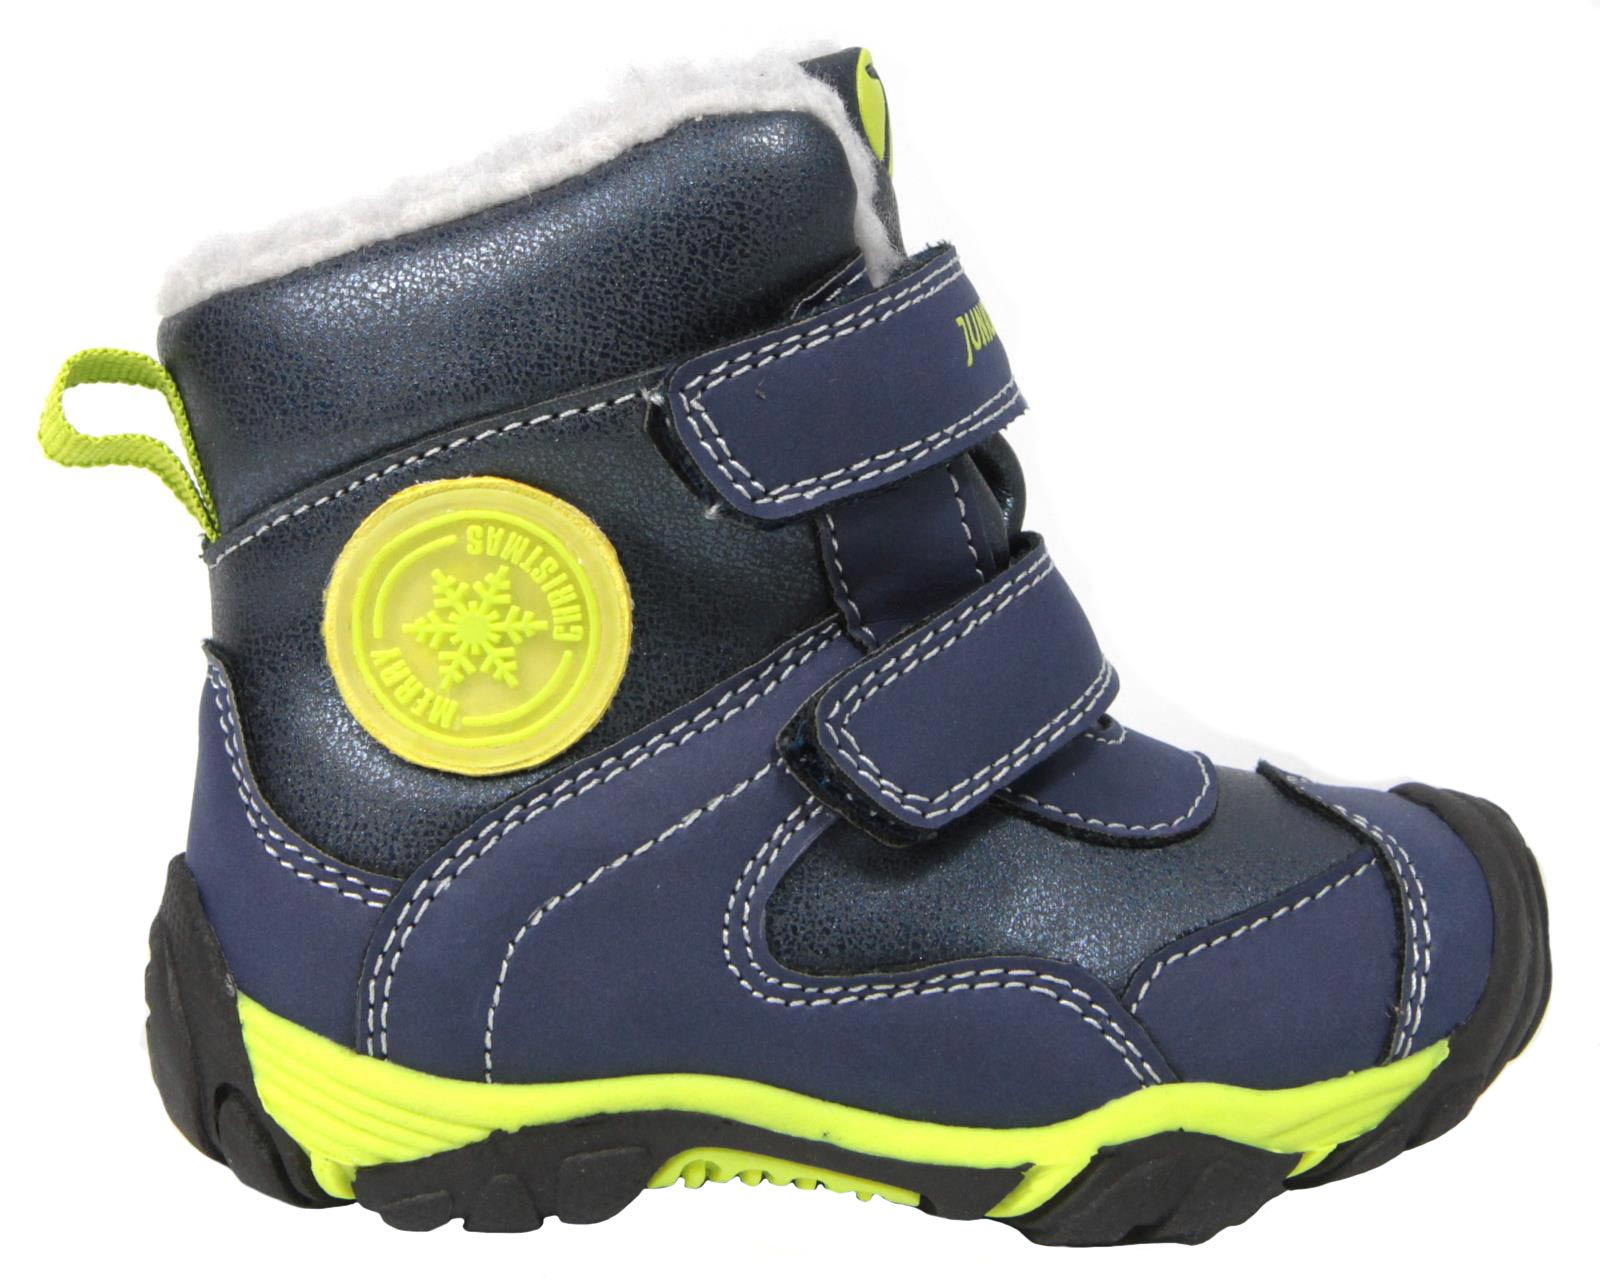 Kids' Winter Boots